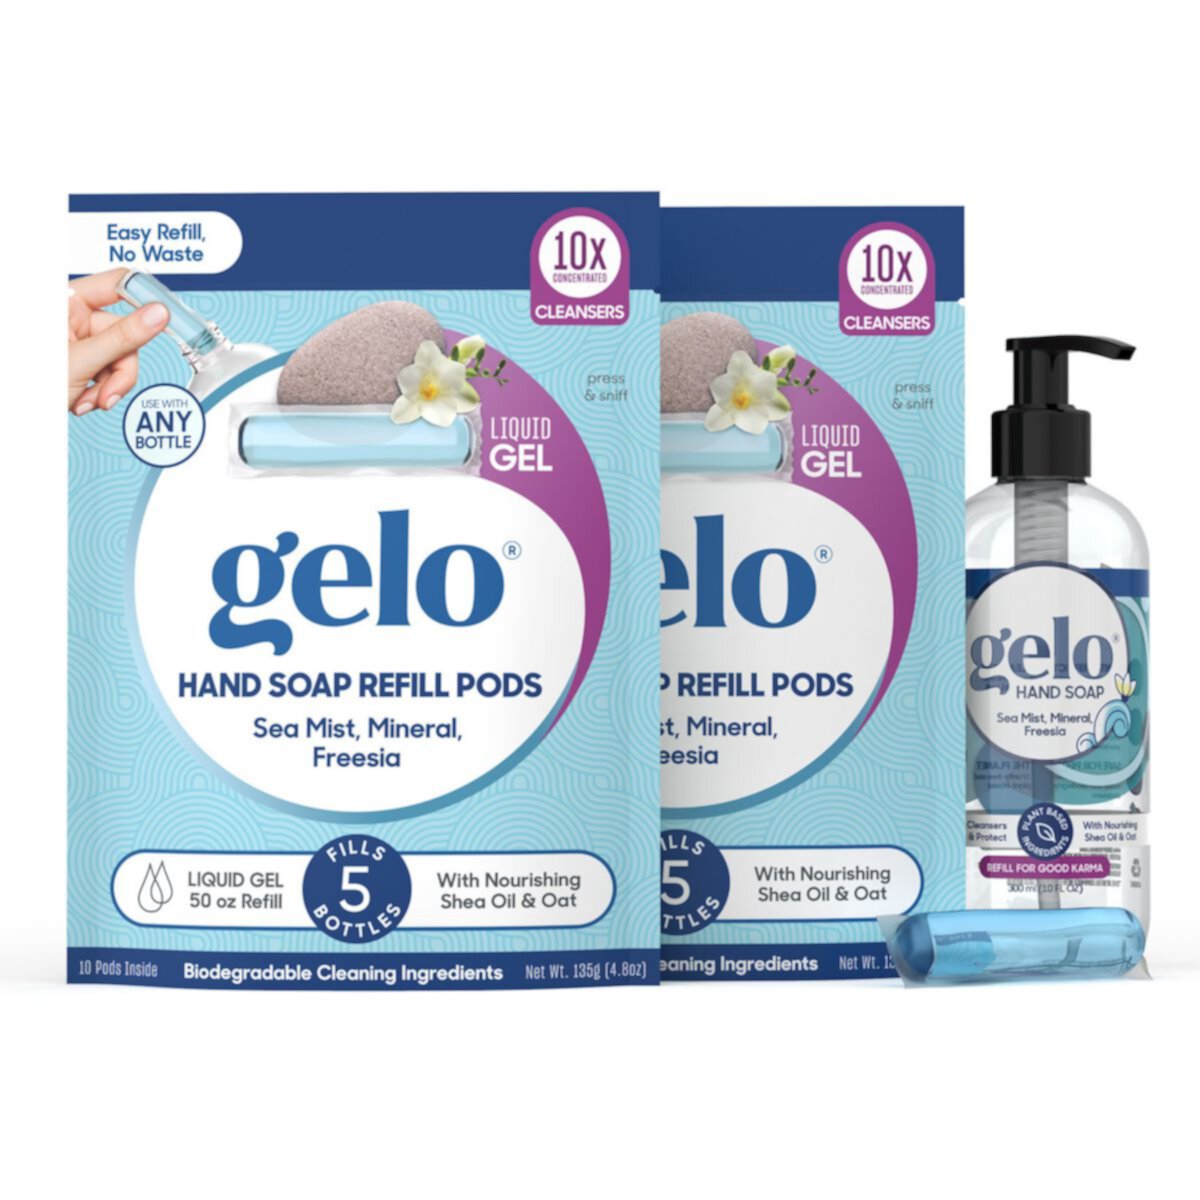 Жидкое гелевое мыло для рук Gelo Value Pack - Морской туман и минералы, 100 жидких унций + многоразовая бутылка Gelo